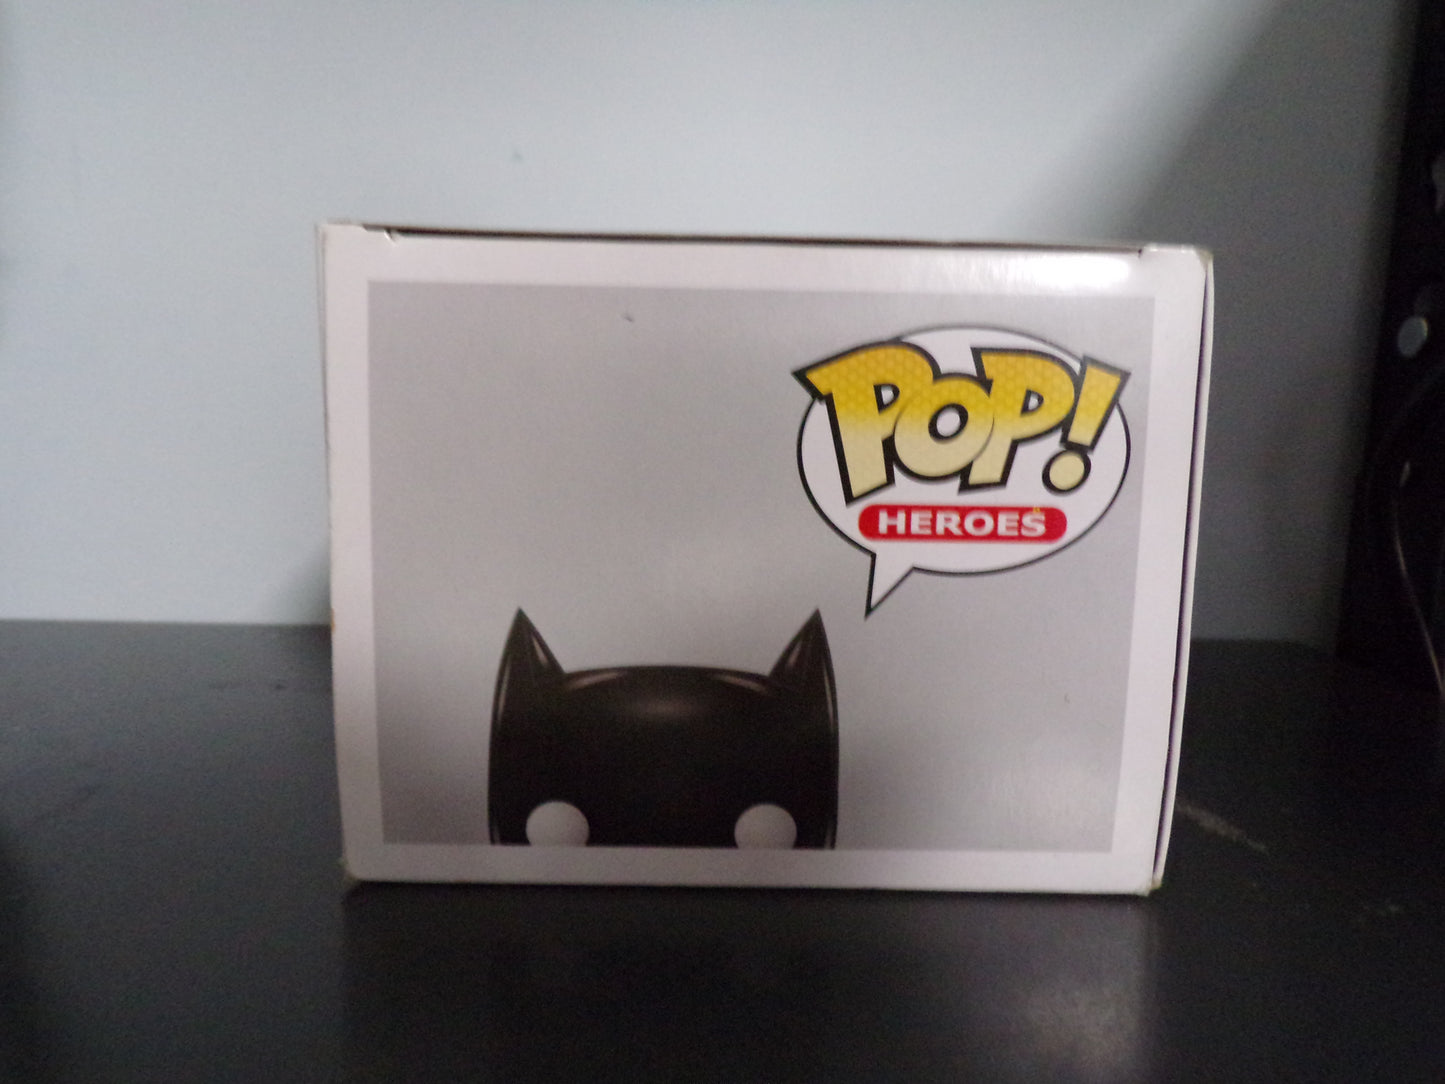 Funko Pop! DC Super Heroes - Batgirl Gamestop Exclusive #03